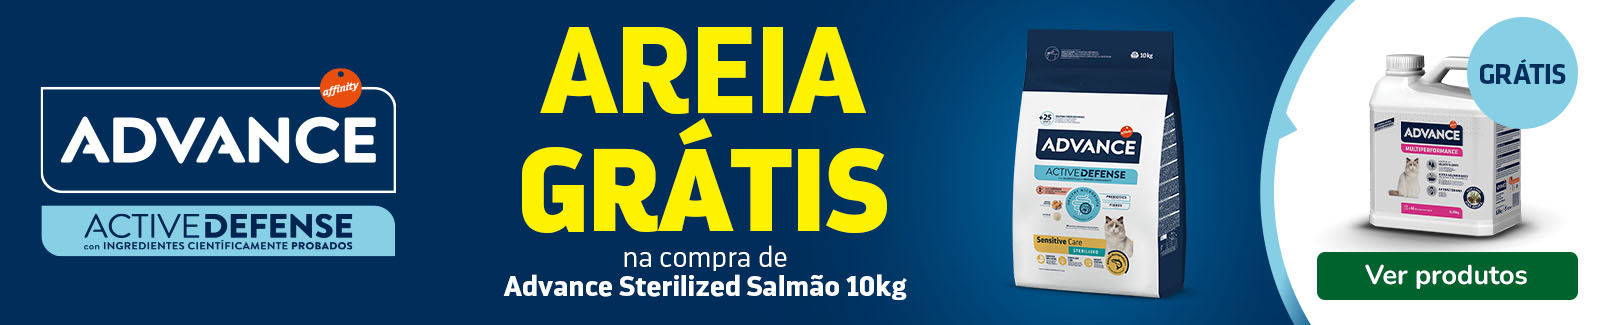 SUPER OFERTA: areia GRÁTIS com Advance Sterilized Salmão e Cevada de 10kg para gatos